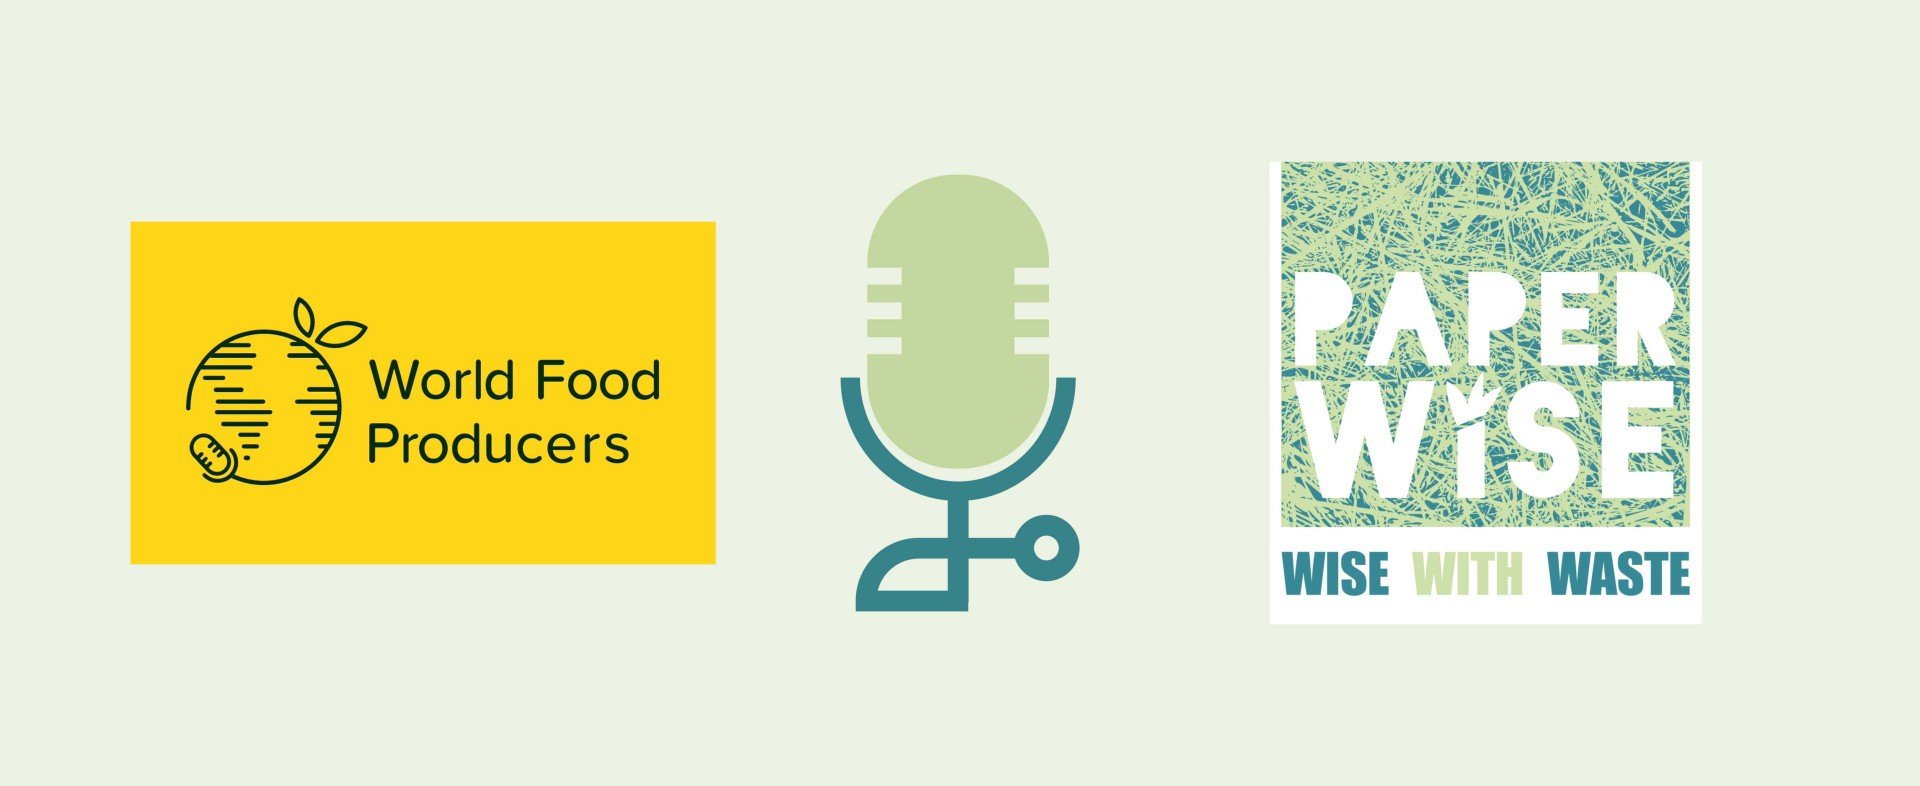 World Food Producers entrevista al fundador de PaperWise, Peter van Rosmalen